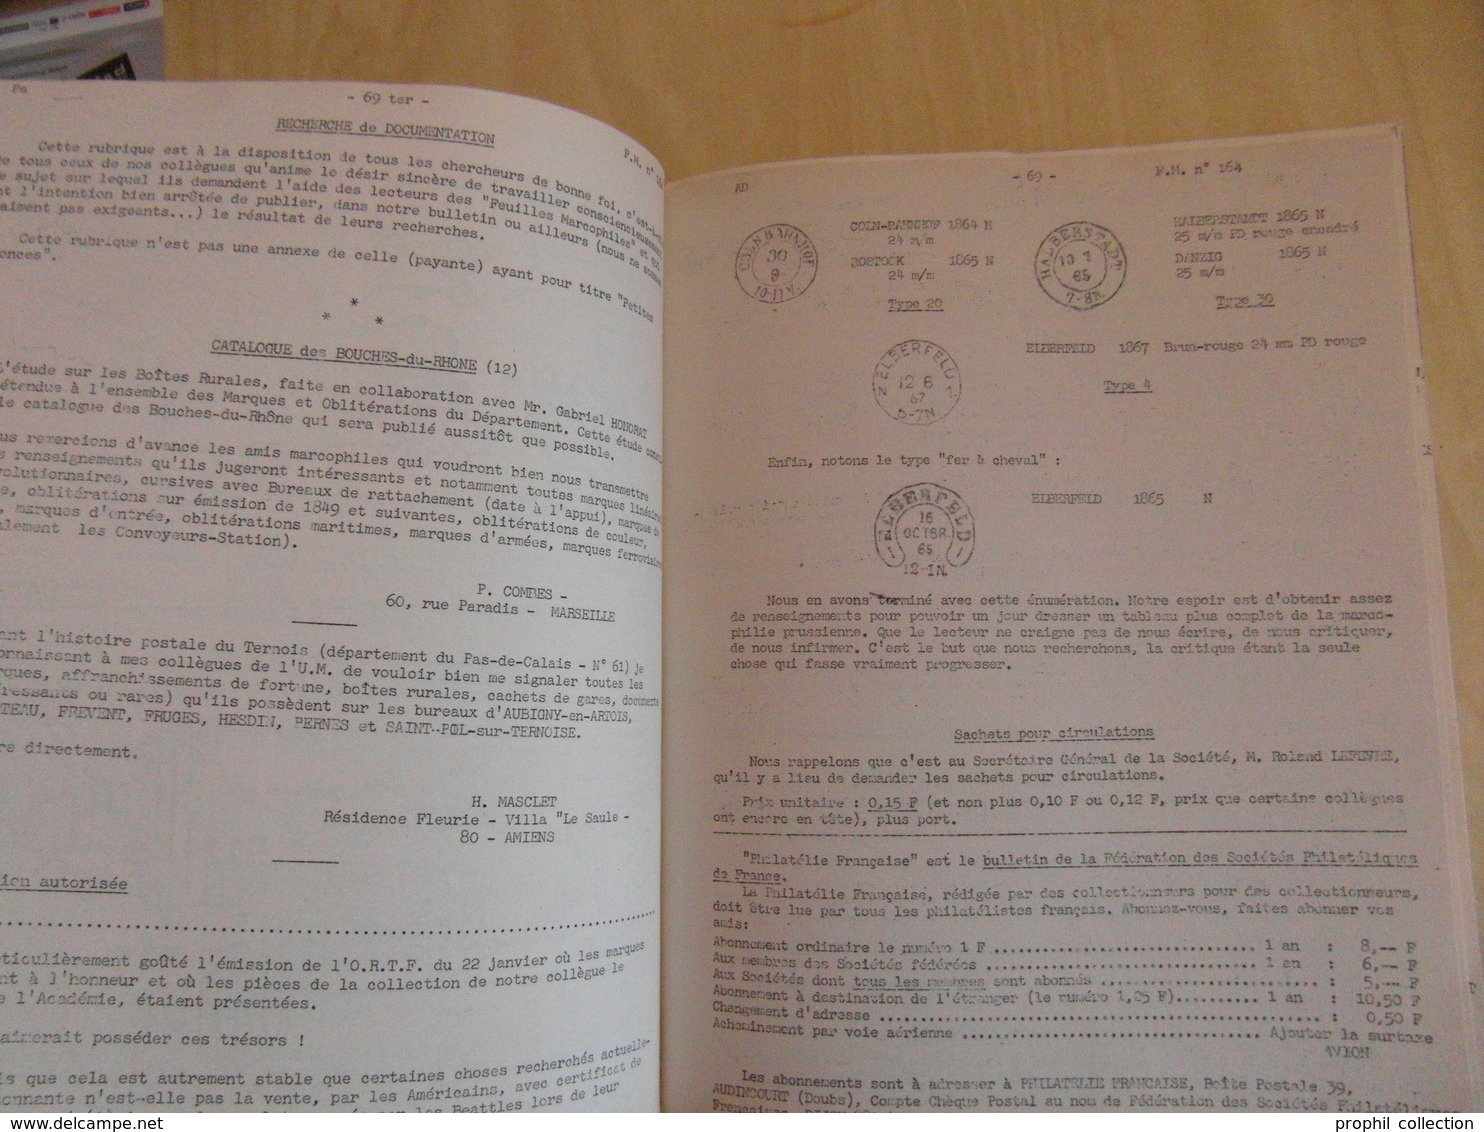 LES FEUILLES MARCOPHILES N° 164 (MARS 1965 / 132 PAGES / PLUSIEURS PHOTOS) - BULLETIN DE L'UNION MARCOPHILE - Filatelia E Storia Postale